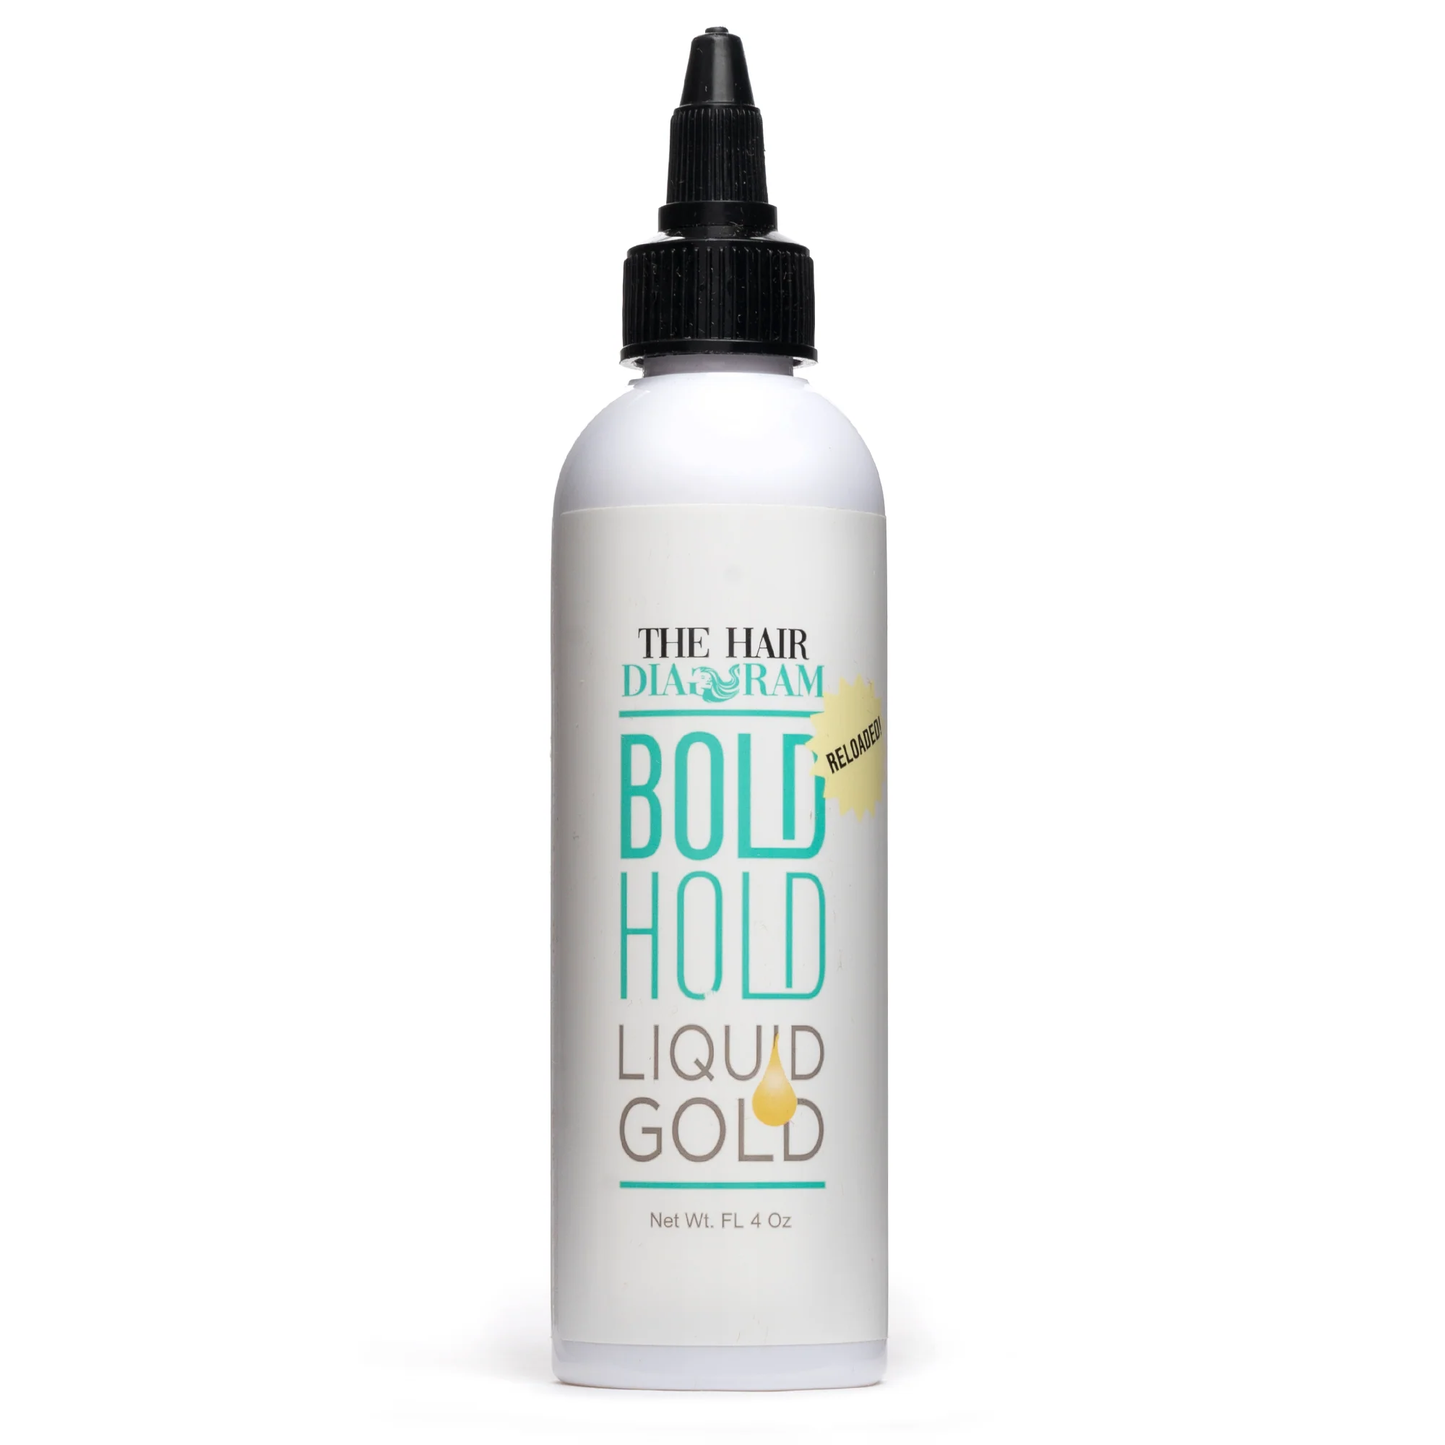 The Hair Diagram Bold Hold Liquid Gold Glue-less Lace Adhesion Liquid 4 fl oz